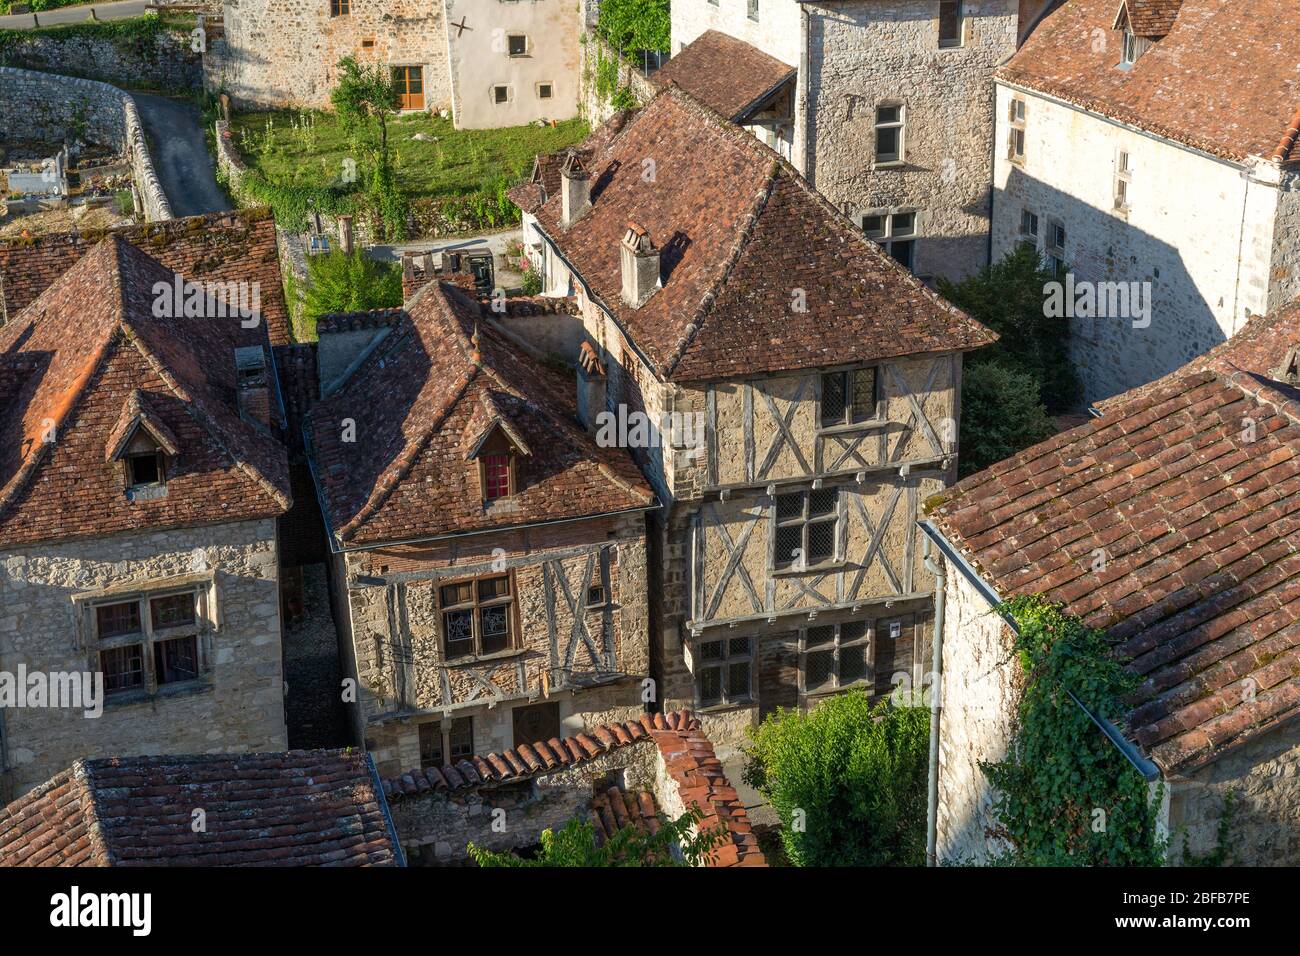 Maisons à colombages dans la ville médiévale de Saint-Cirq-Lapopie, Quercy, Occitanie, France Banque D'Images